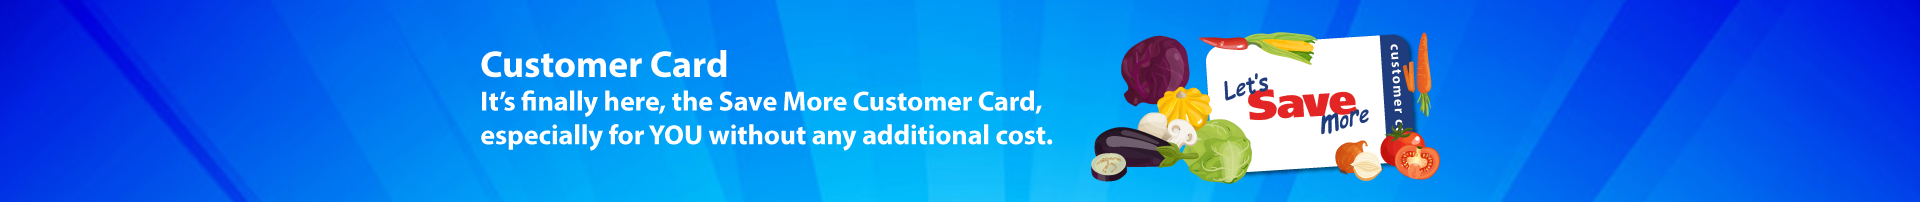 Customer Card